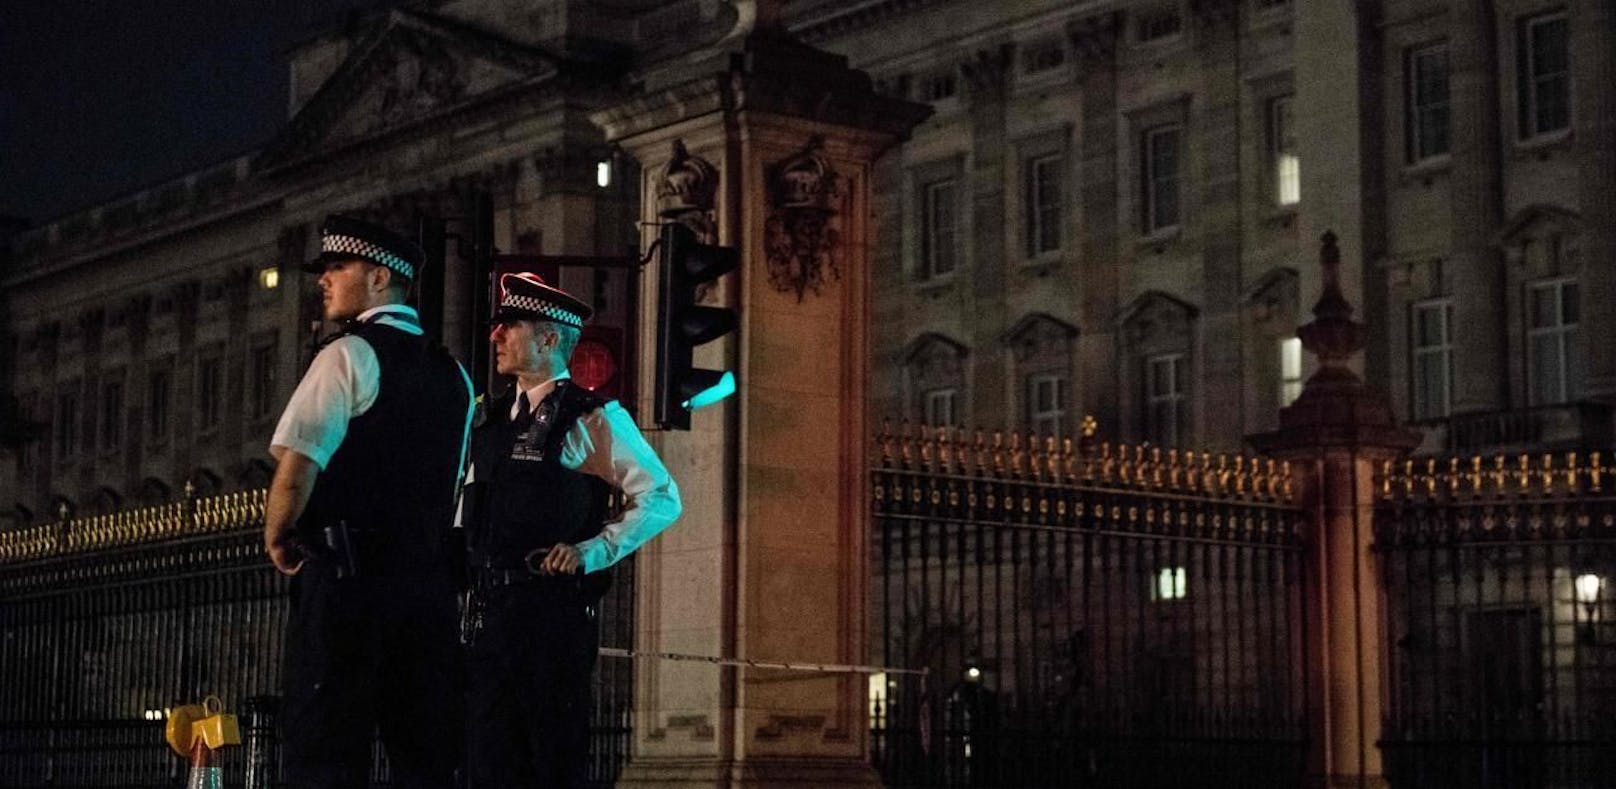 Freitagabend wurde ein Mann mit einem Messer vor dem Buckingham-Palast festgenommen.